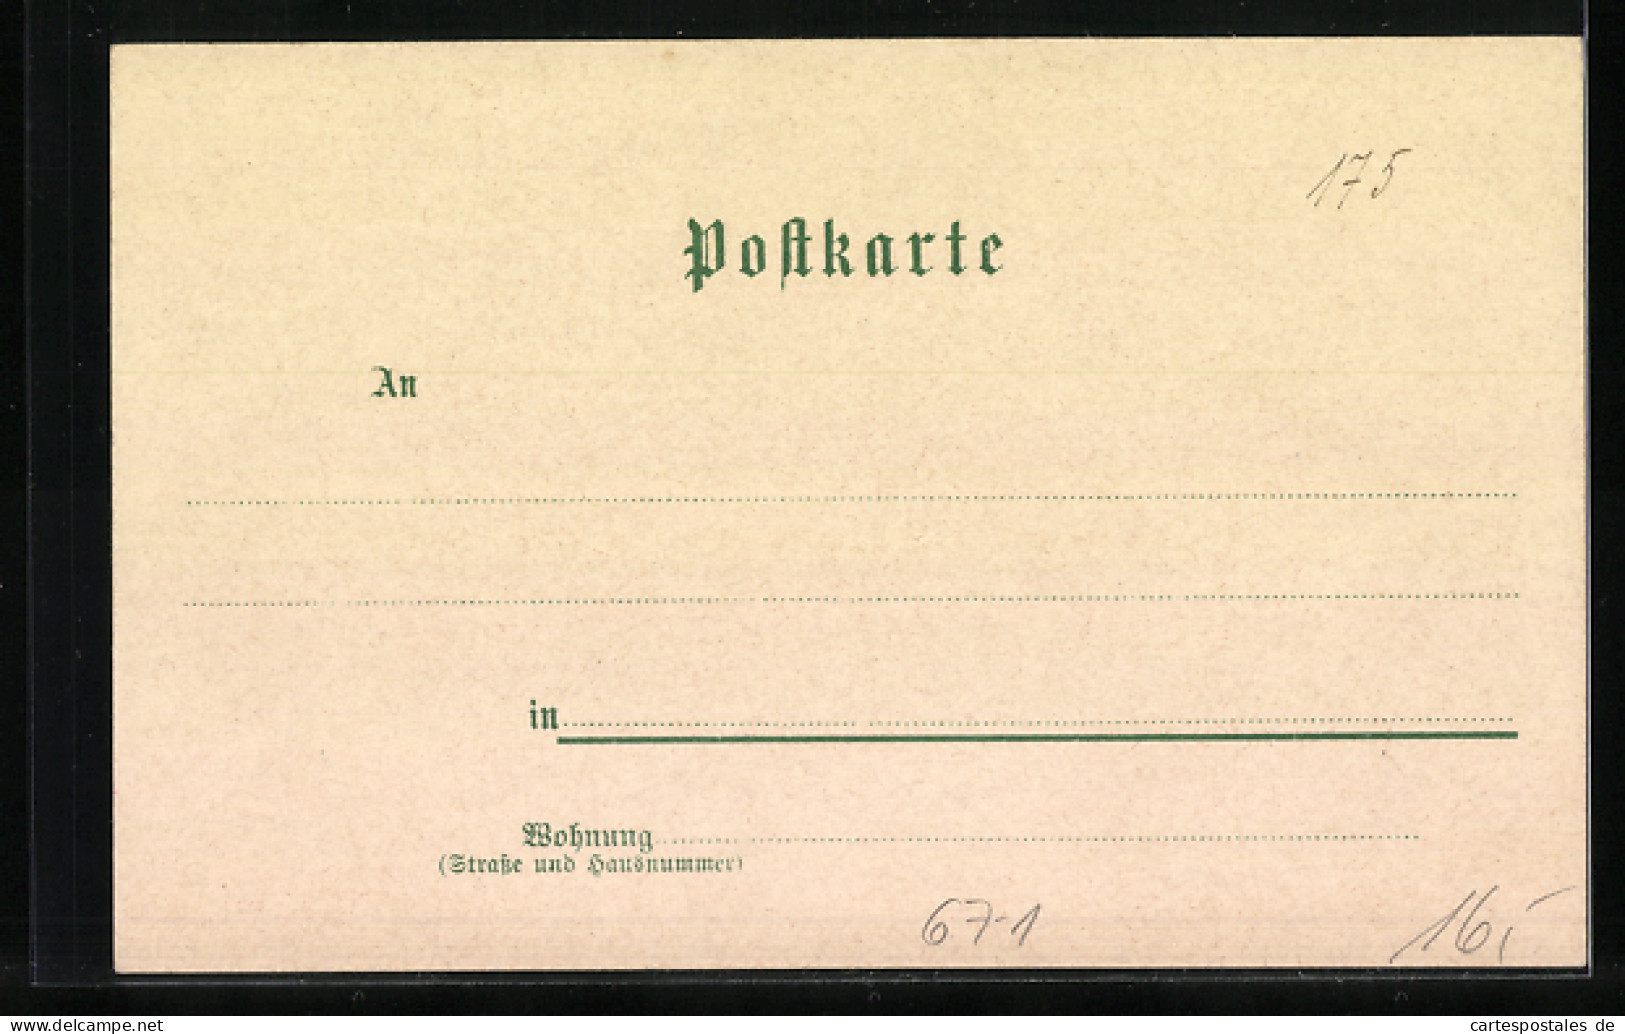 Lithographie Heilbronn, Industrie-Gewerbe- U. Kunst-Ausstellung 1897  - Ausstellungen